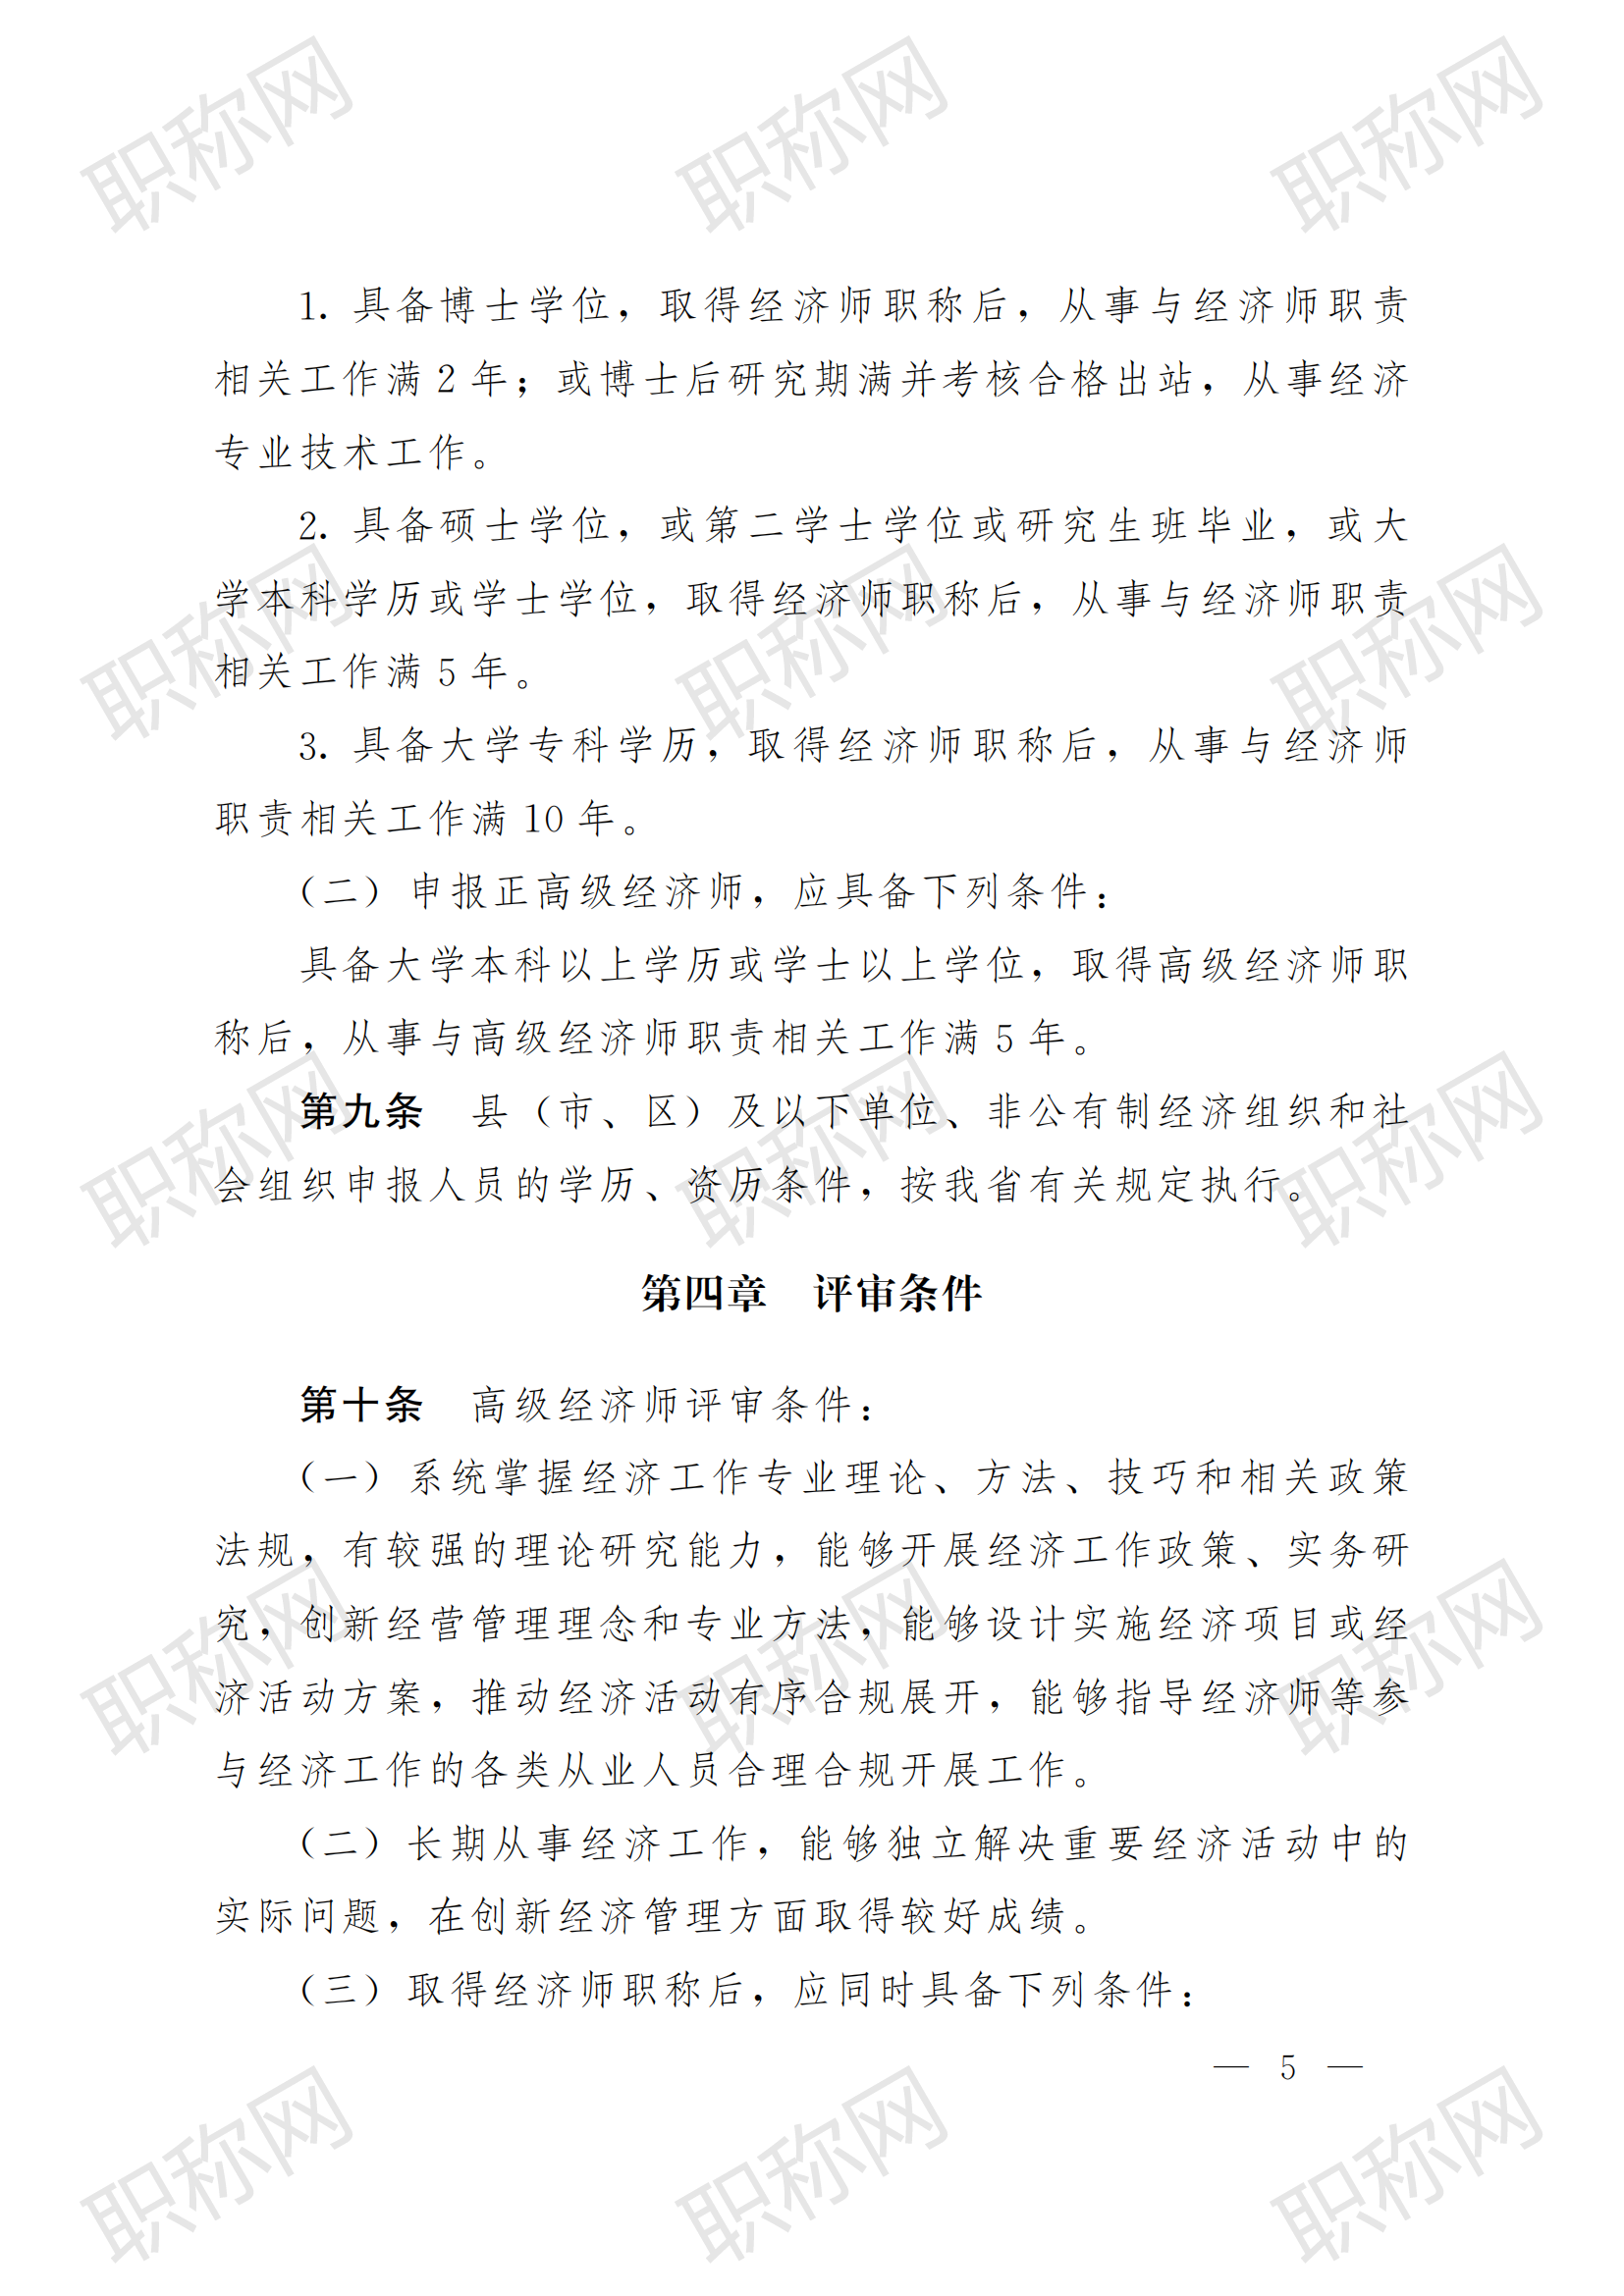 关于印发云南省经济专业人员高级职称评价标准条件 (试行)的通知_04.png